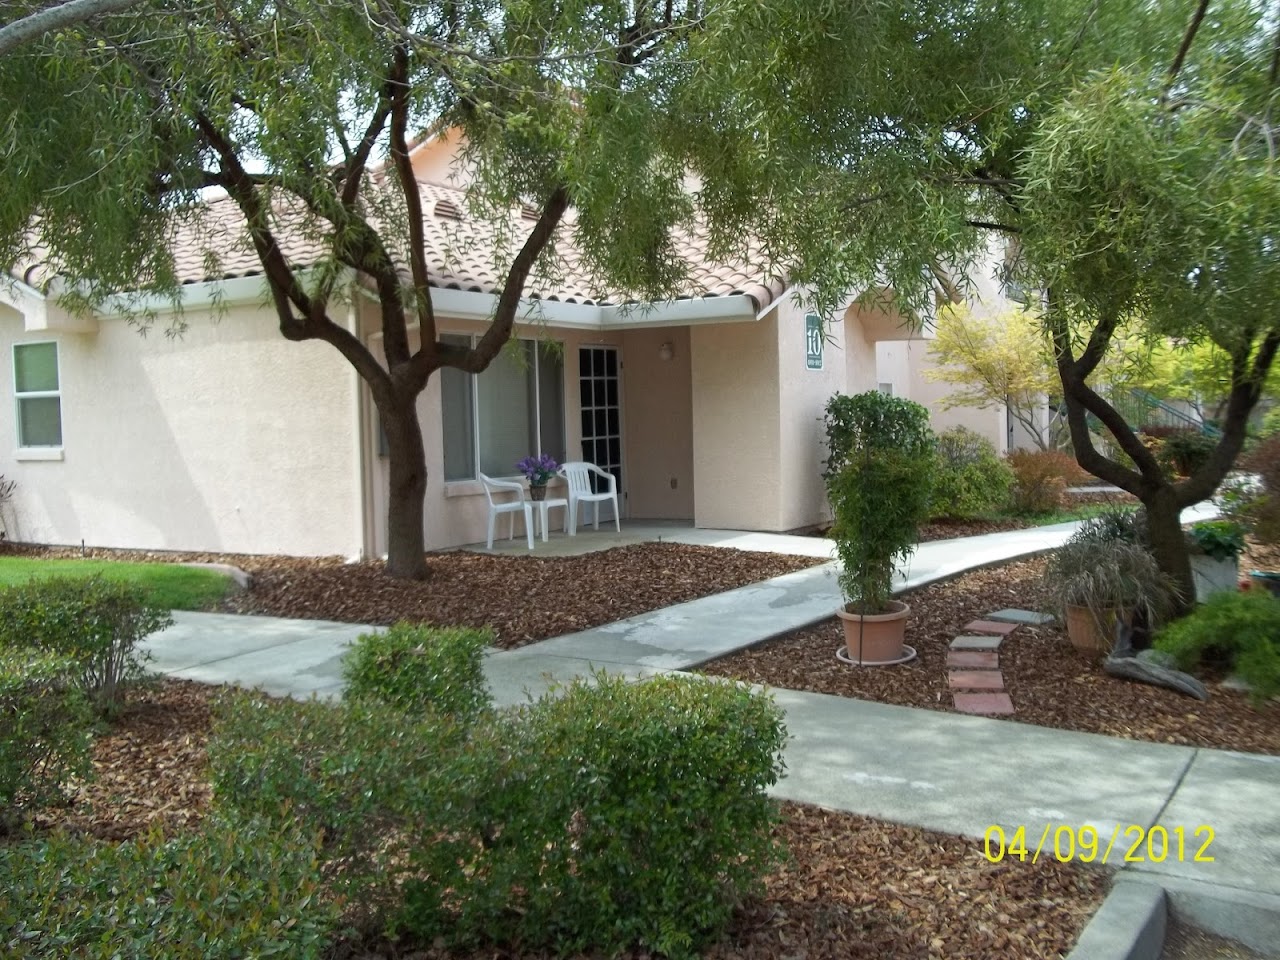 Photo of VILLA SERENA AT STANFORD RANCH. Affordable housing located at 101 VILLA SERENA CIR ROCKLIN, CA 95765